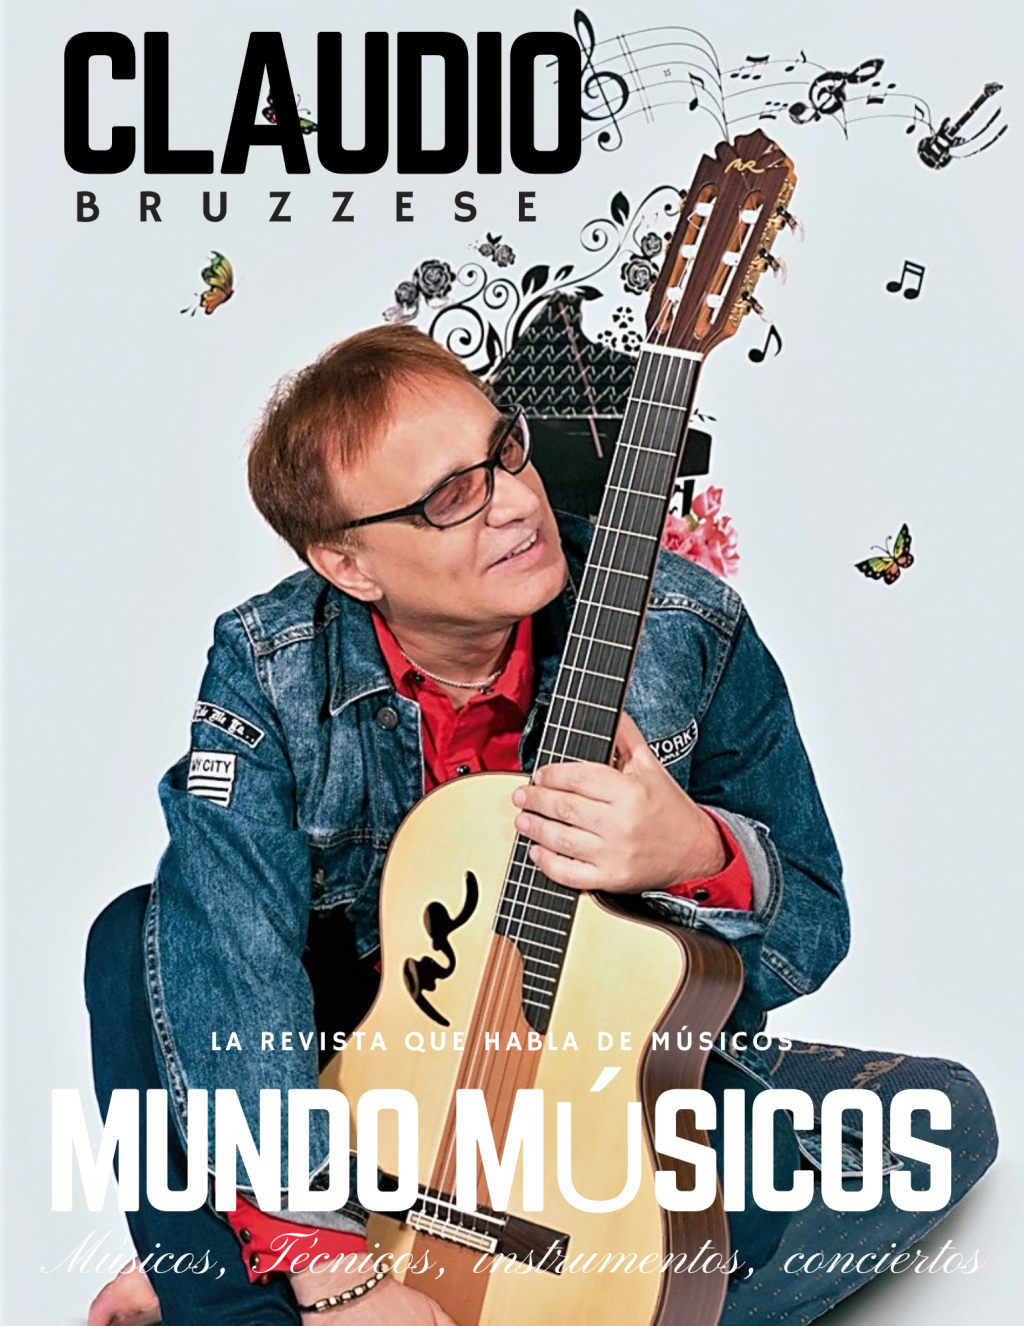 CLAUDIO BRUZZESE MUSICOS